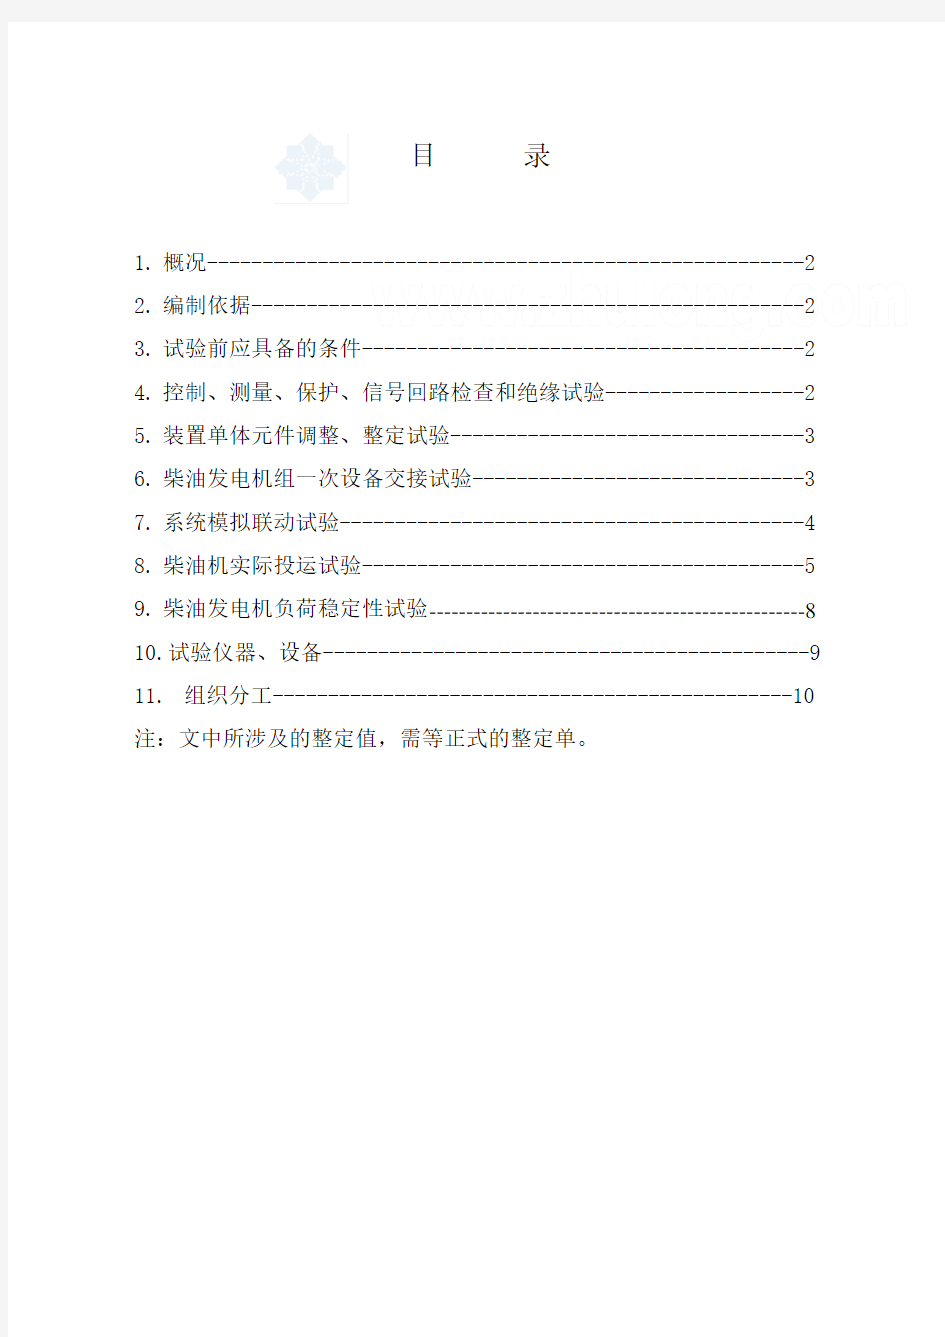 柴油发电机组调试作业指导书.